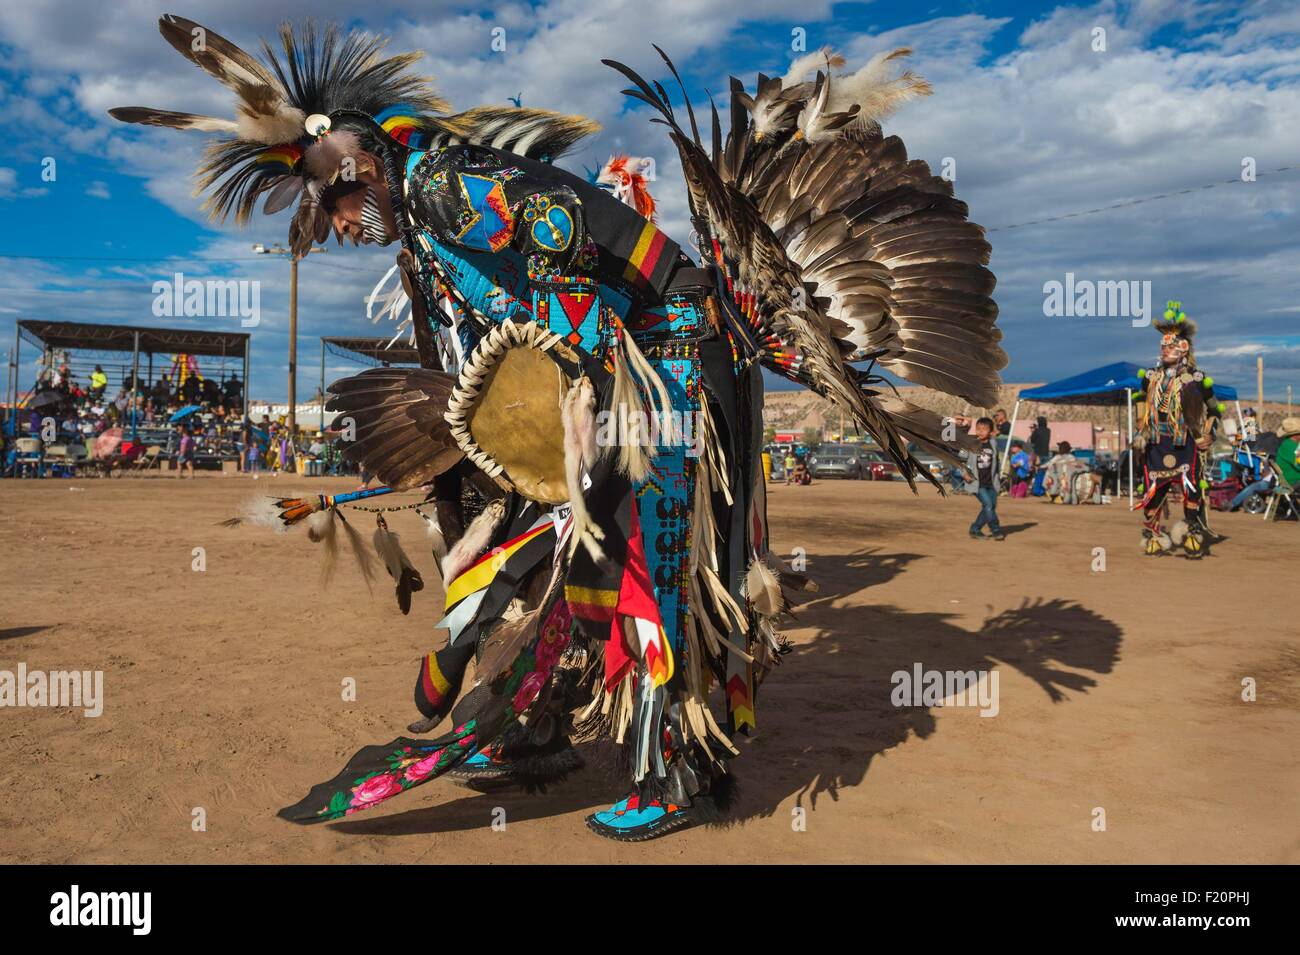 United States, Arizona, Window Rock, Festival, foire de la Nation Navajo navajo danseurs portant des vêtements de cérémonie (regalia) lors d'un Pow-wow Banque D'Images